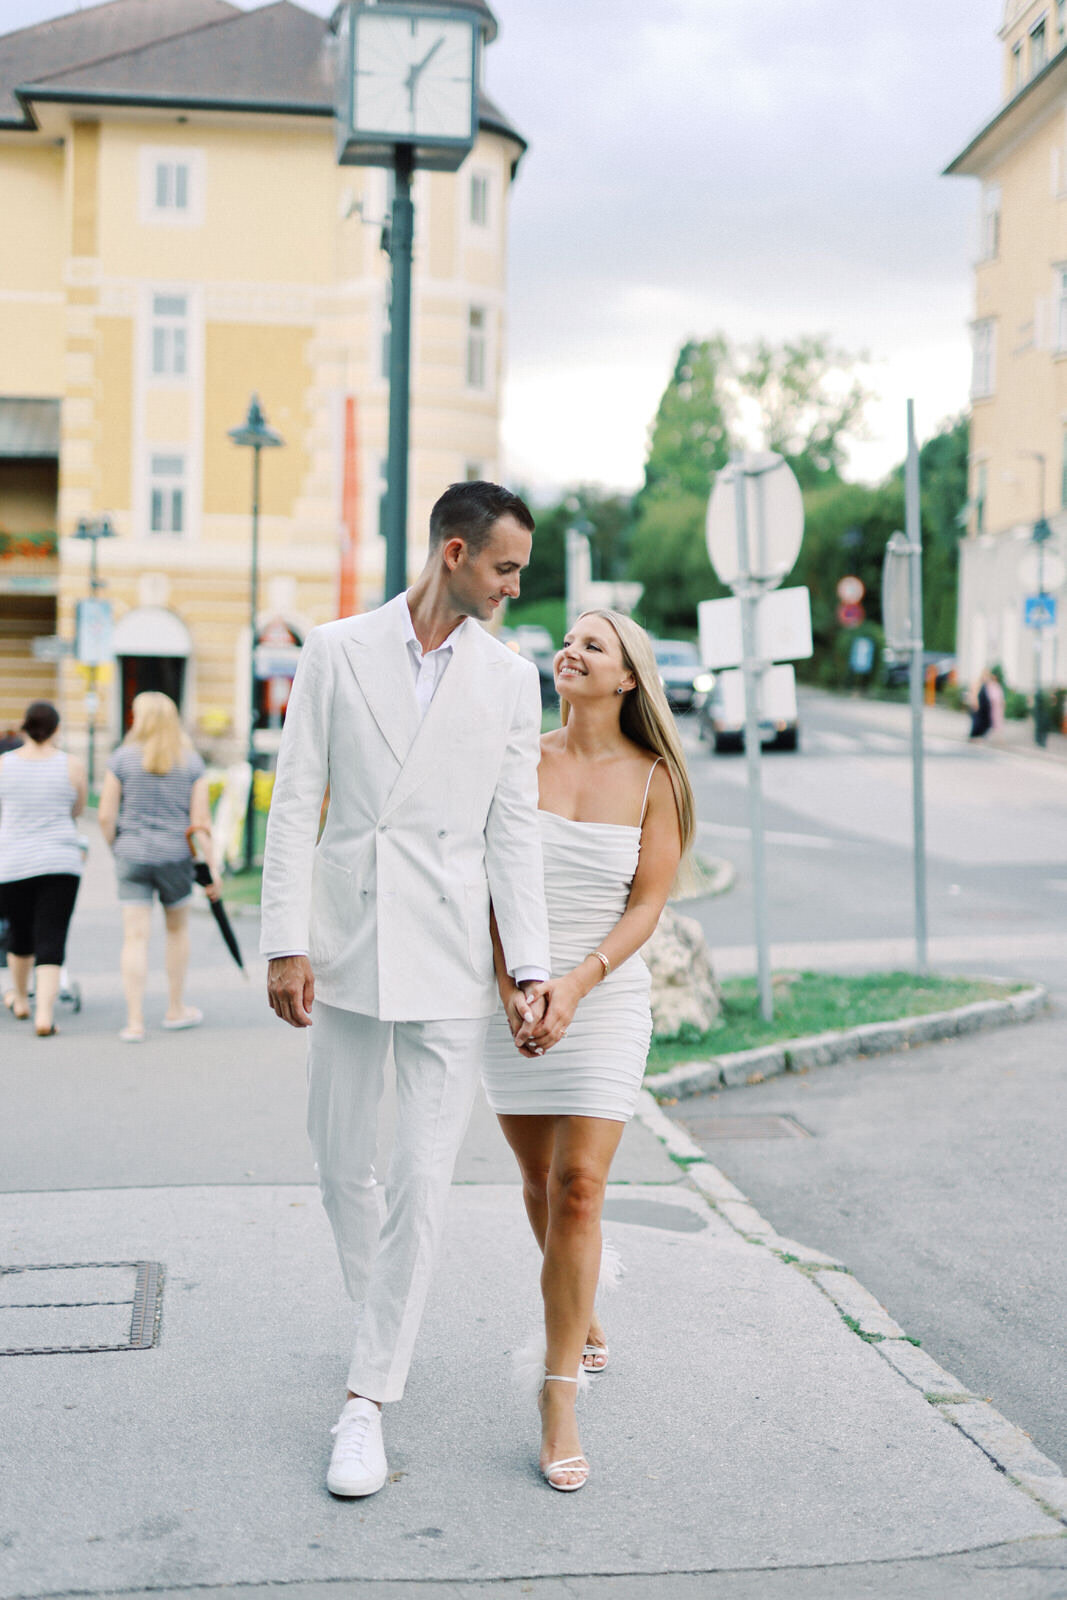 Luxury Destination Wedding Photography in Austria 17